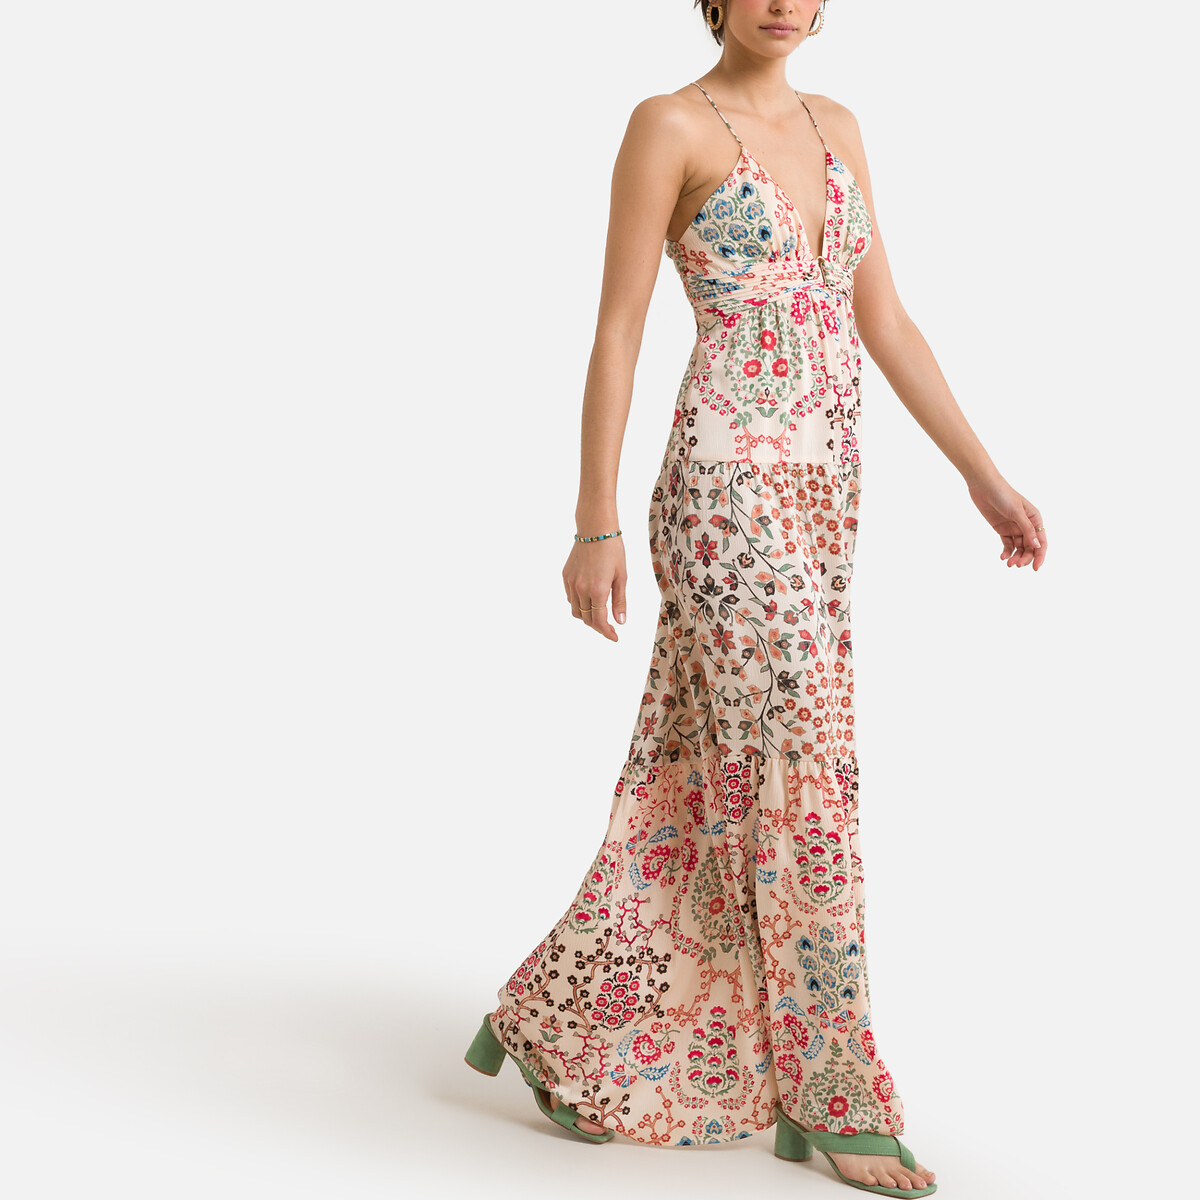 Платье BA&SH Длинное с принтом GISELE 1(S) бежевый, размер 1(S) Длинное с принтом GISELE 1(S) бежевый - фото 1